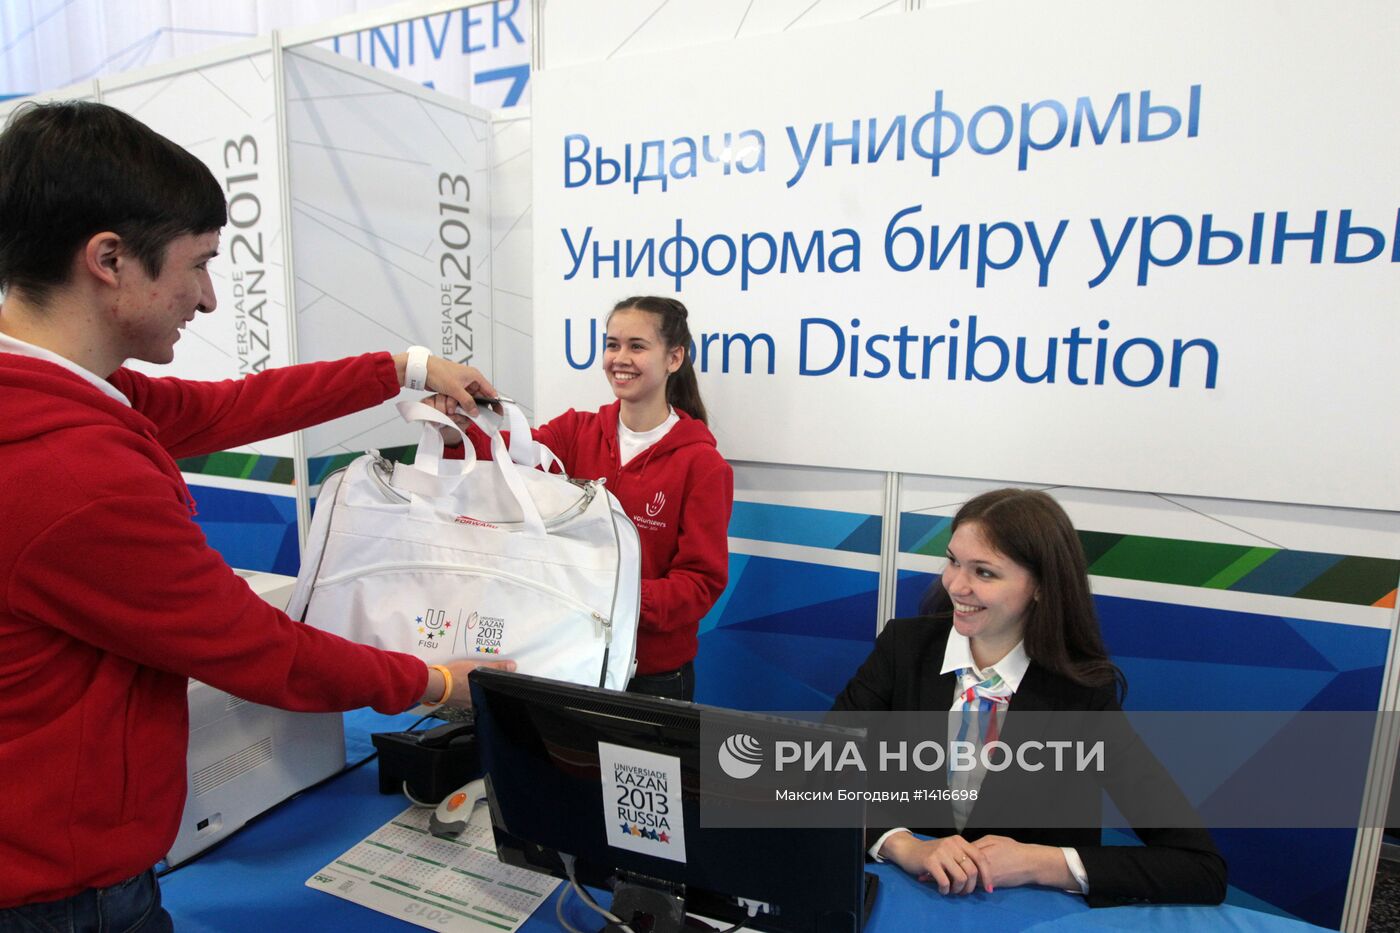 Открытие Центра аккредитации Универсиады-2013 в Казани